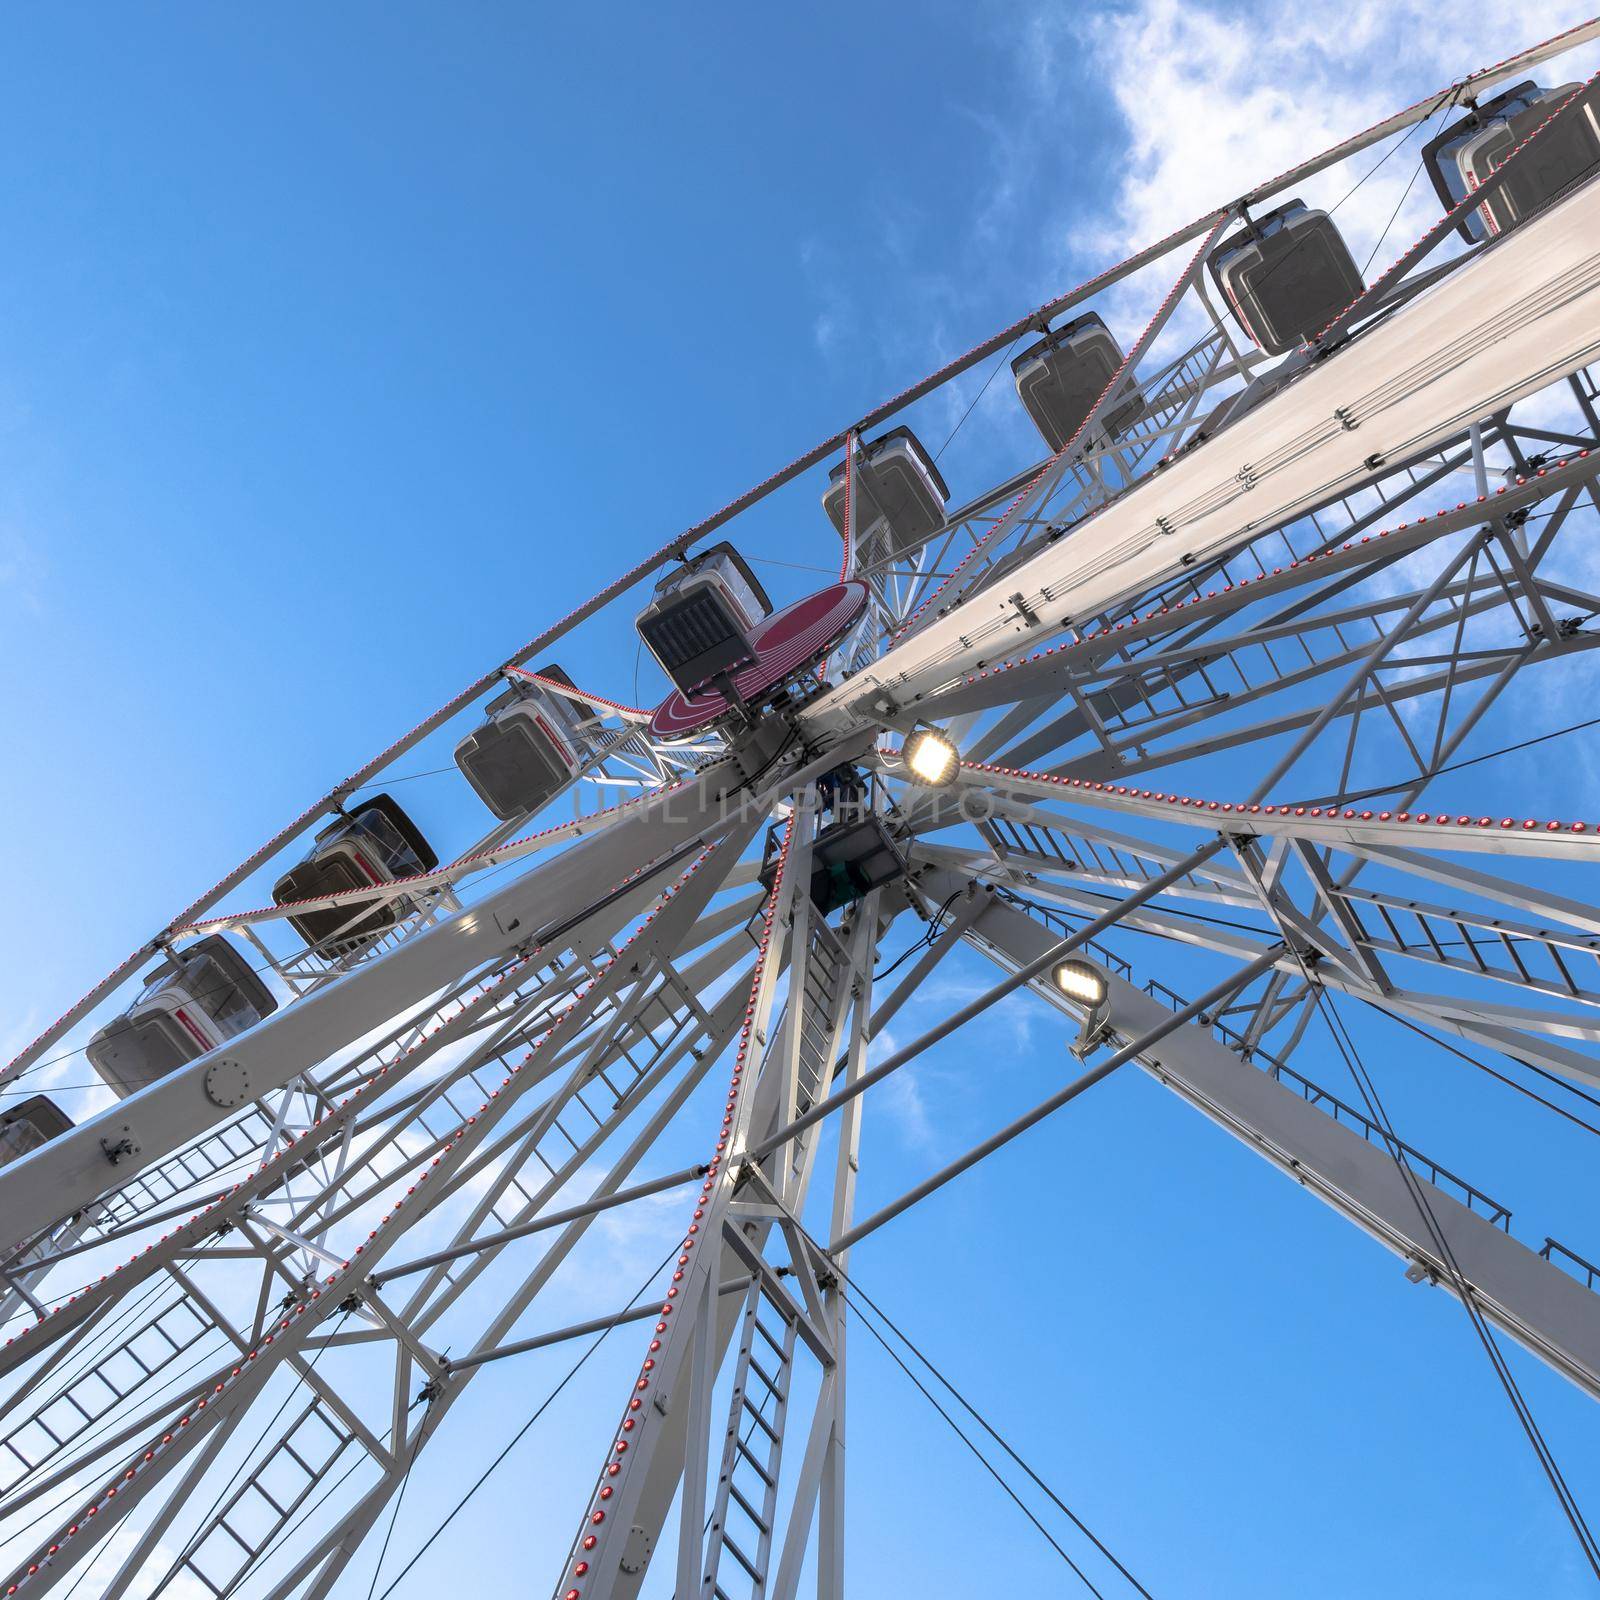 Ferris wheel on sky background by germanopoli